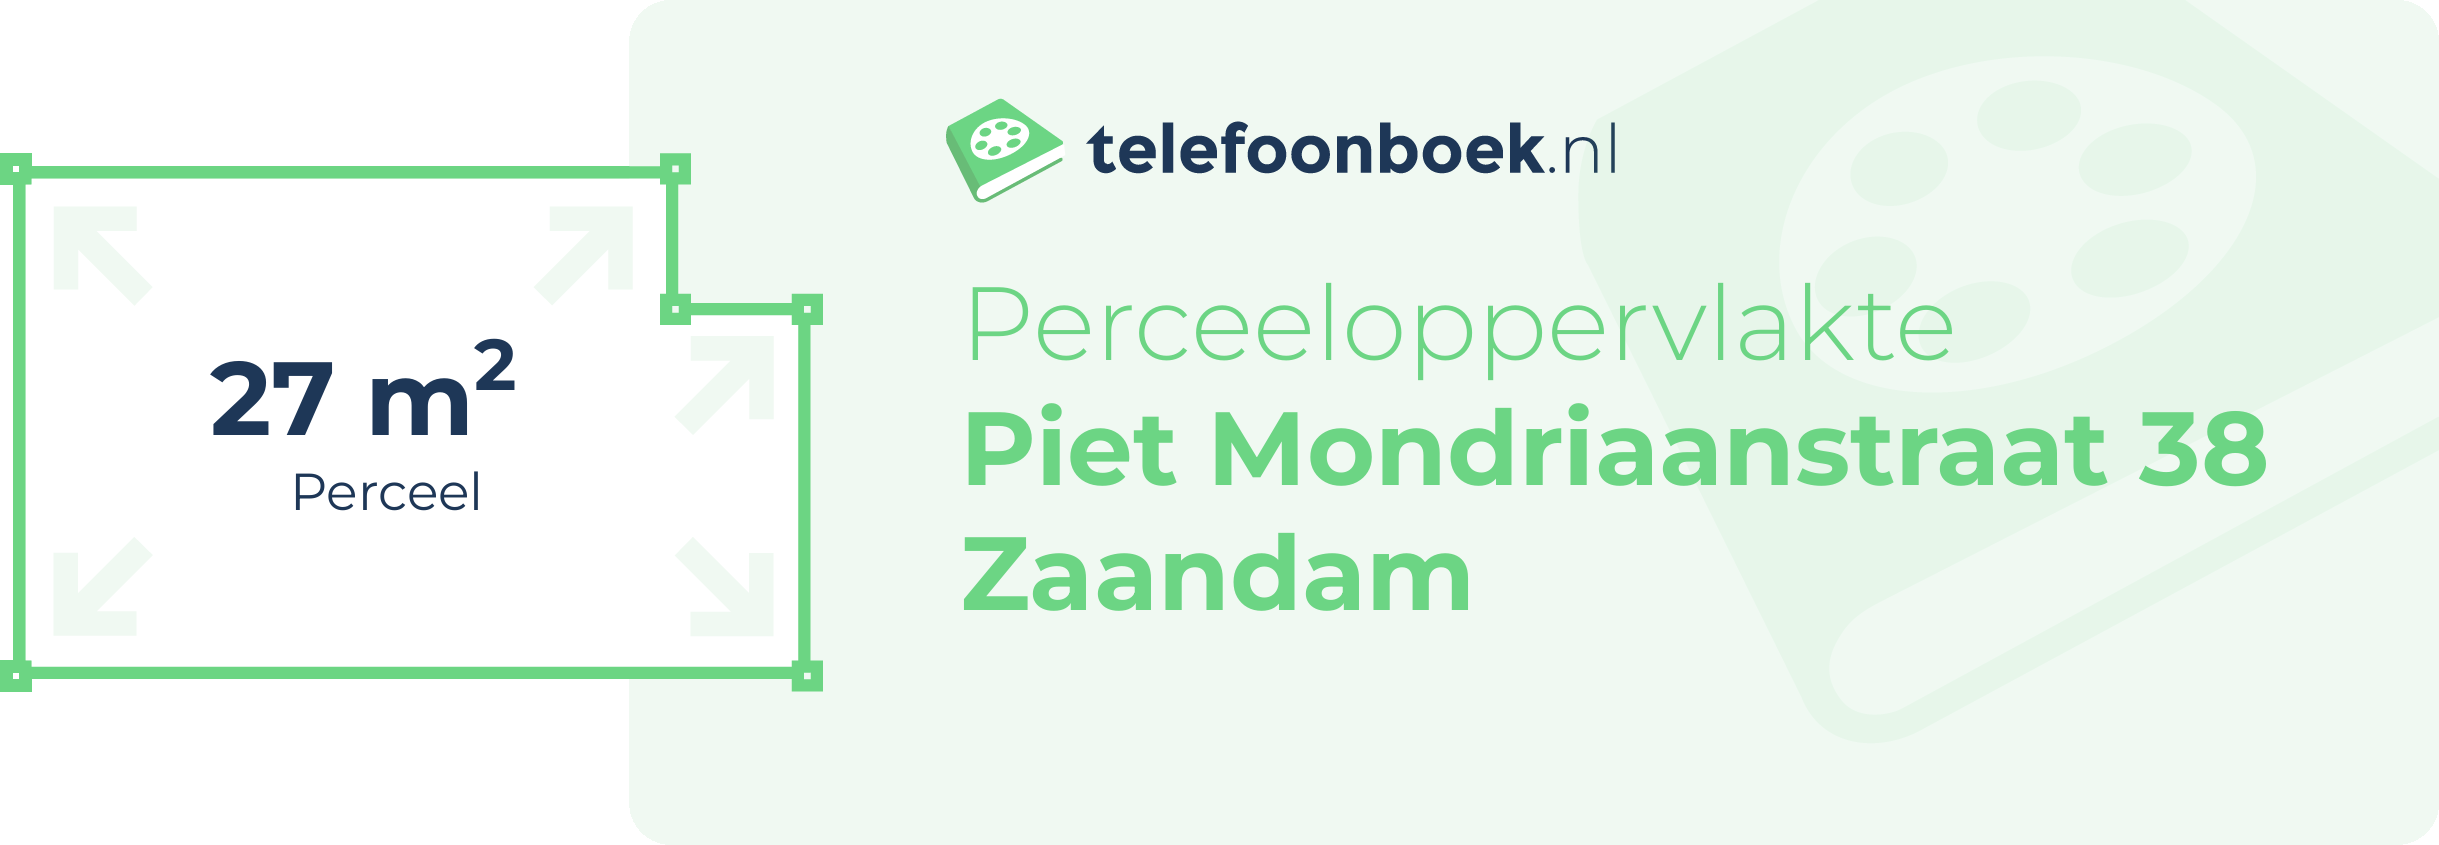 Perceeloppervlakte Piet Mondriaanstraat 38 Zaandam